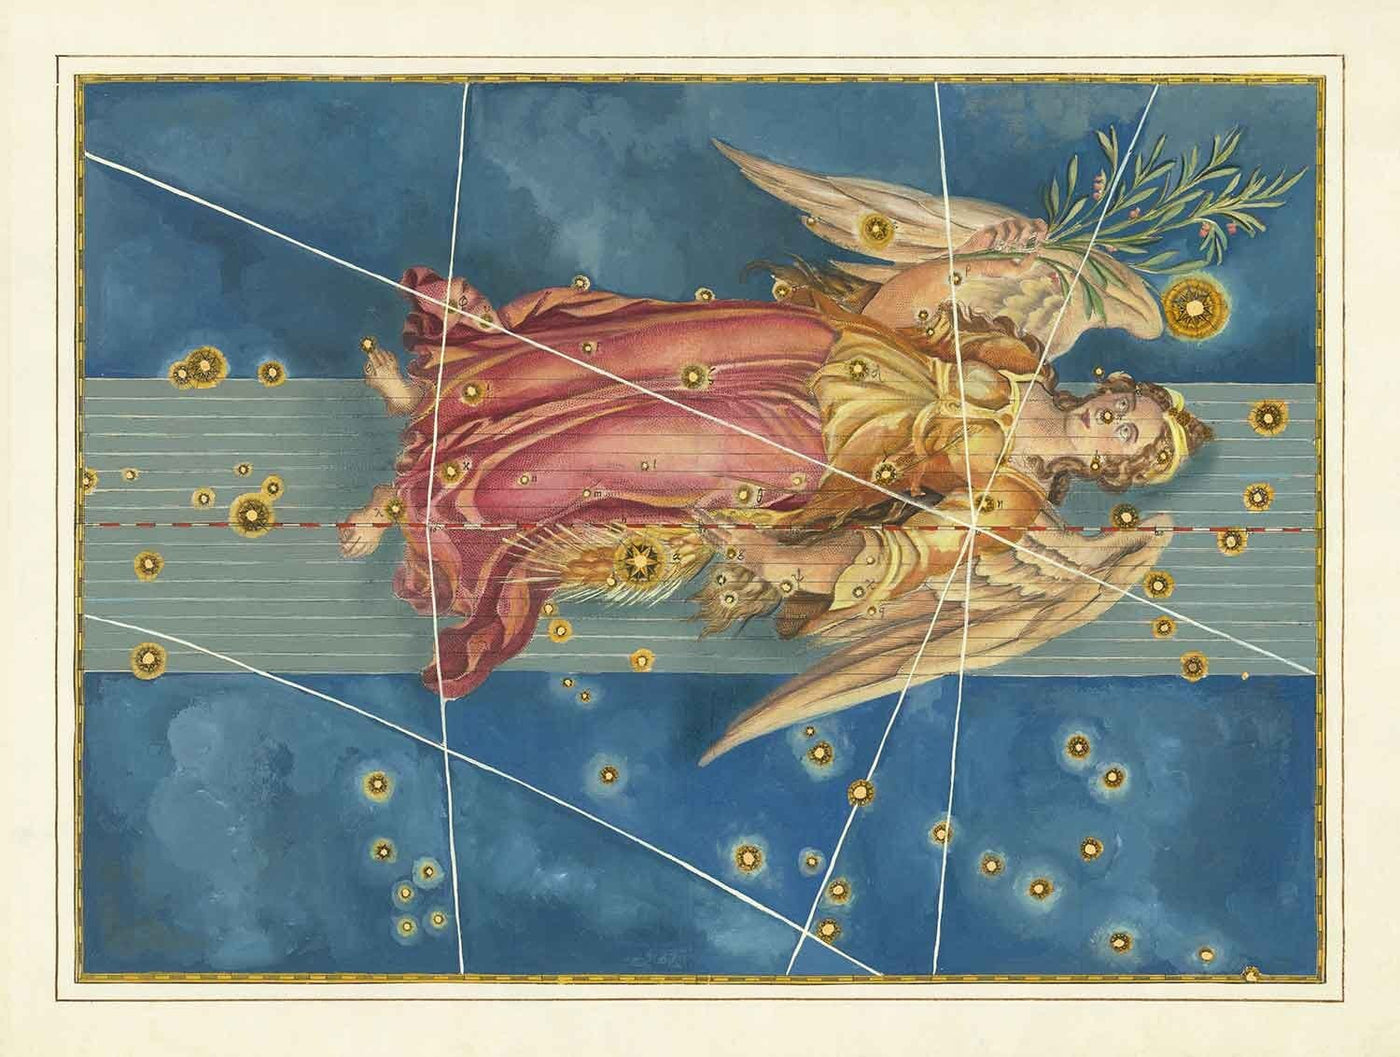 Antiguo mapa estelar de Virgo, 1603 por Johann Bayer - Carta astrológica del zodiaco - El signo del horóscopo de la doncella